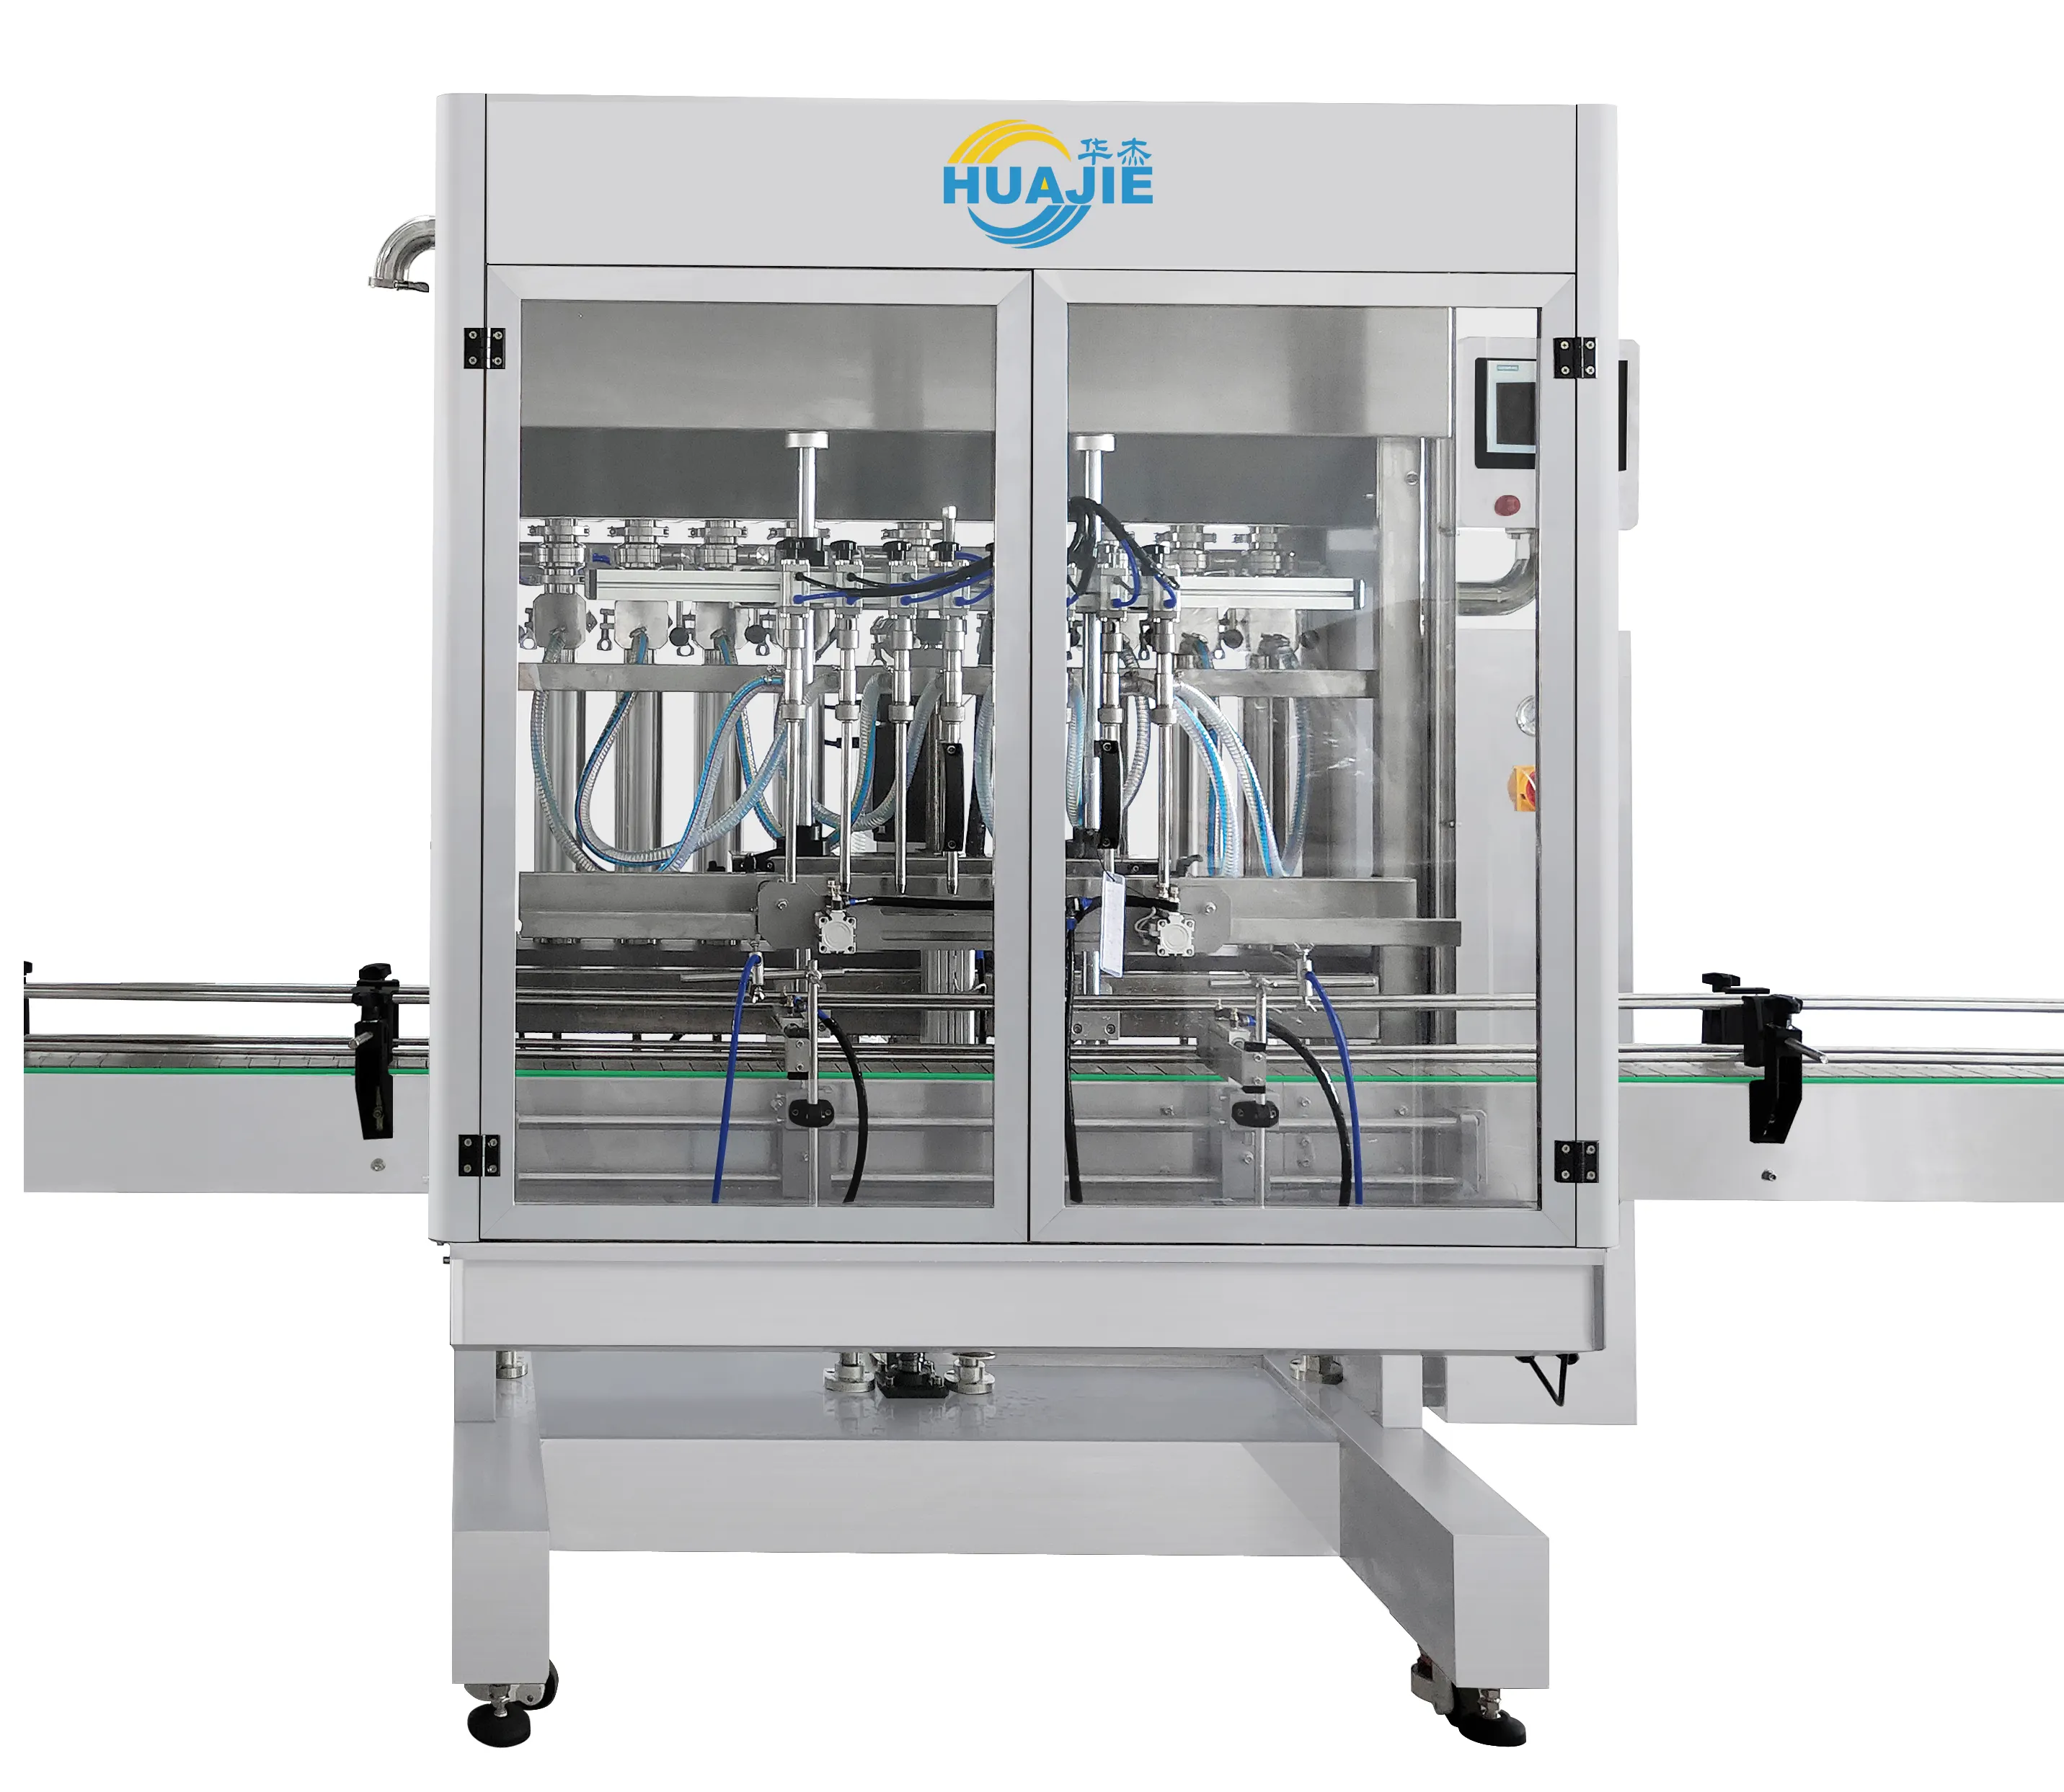 HUAJIE גואנגזו מכונות מלאה אוטומטית בוכנה מילוי מכונה עבור יד כביסה, שמפו, נוזל כביסה